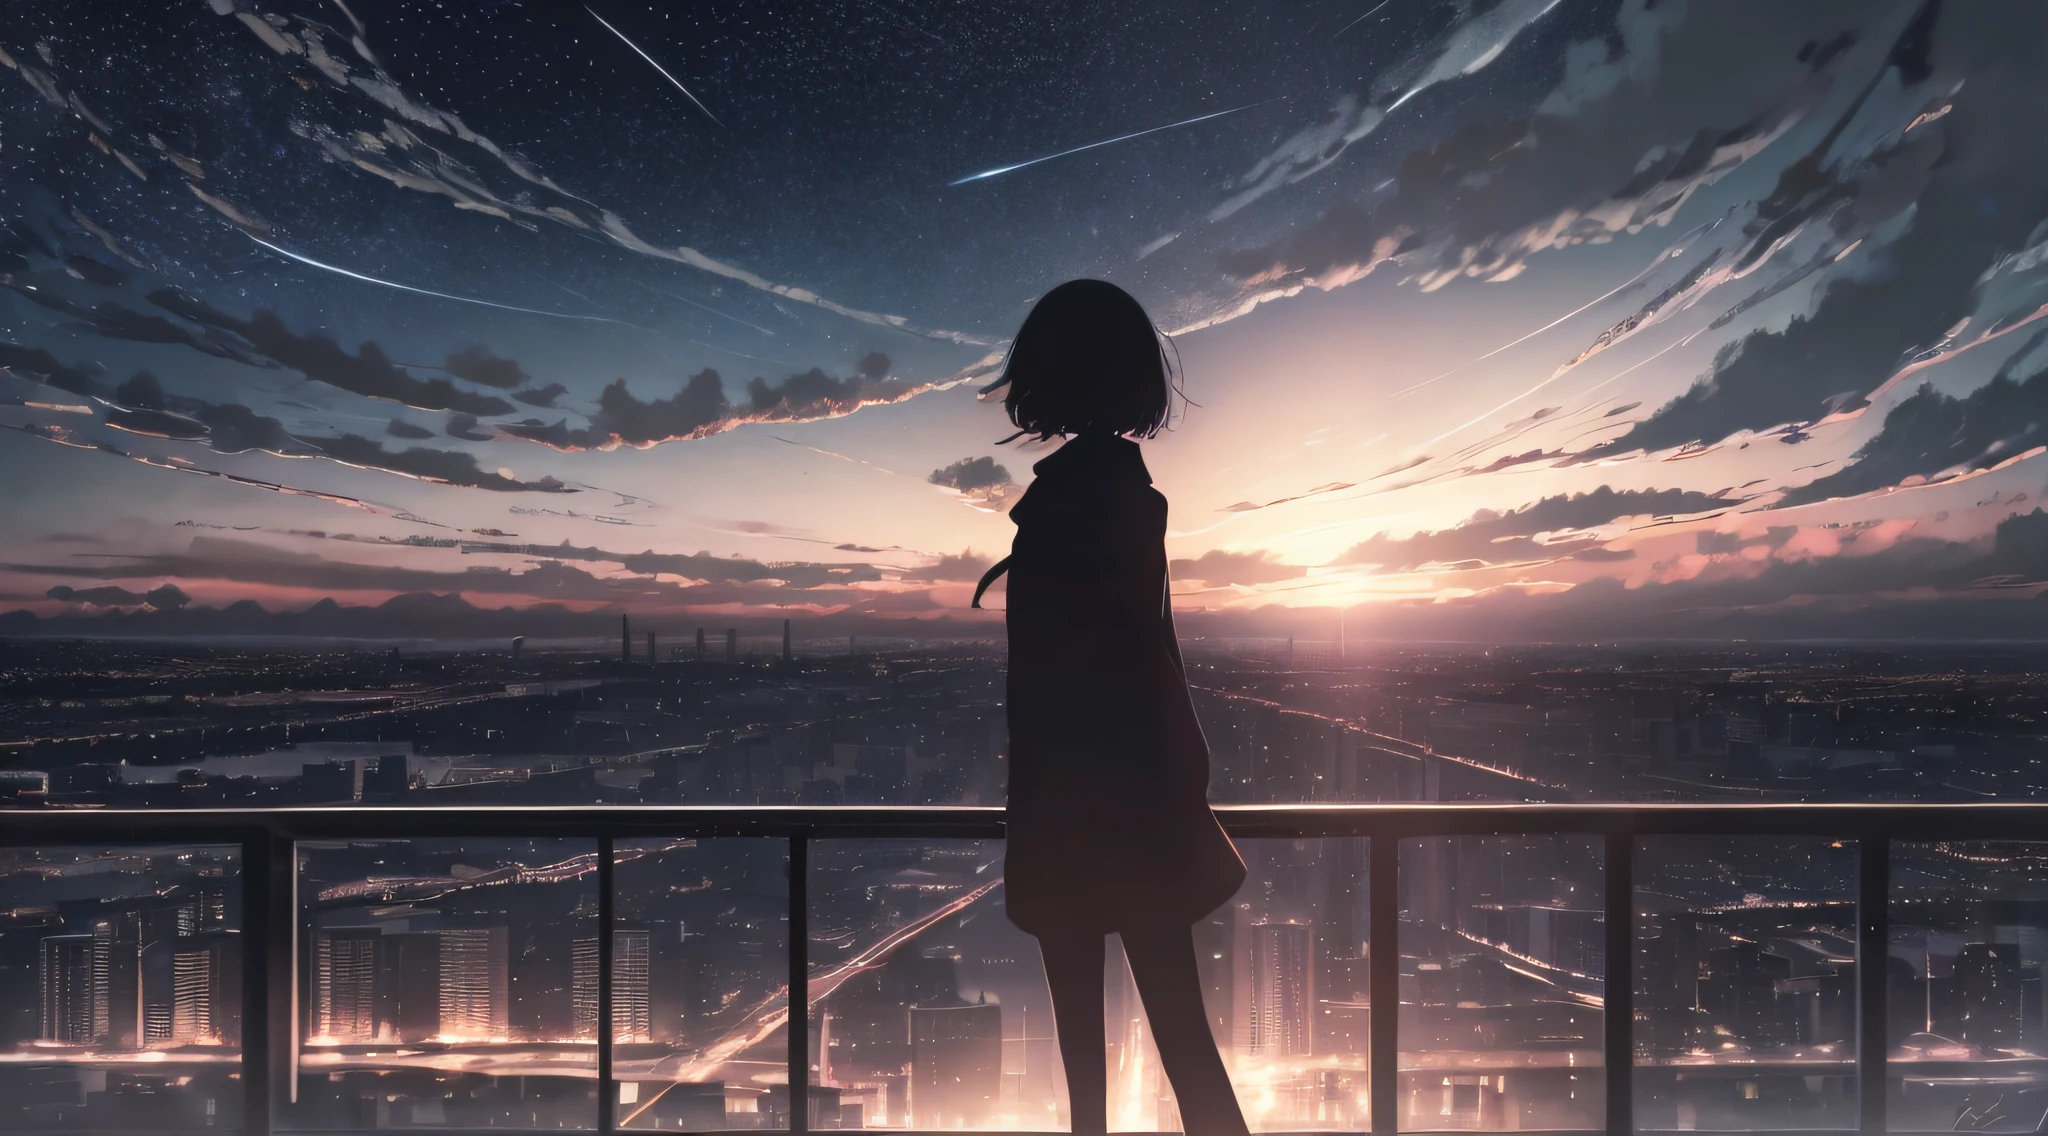 Anime,silhouette,1fille, étoile (ciel), nuage, villescape, bâtiment, ville, en plein air, cielscraper, ville lights, nuit, nuit ciel, coucher de soleil, cielline, ultra haute définition,